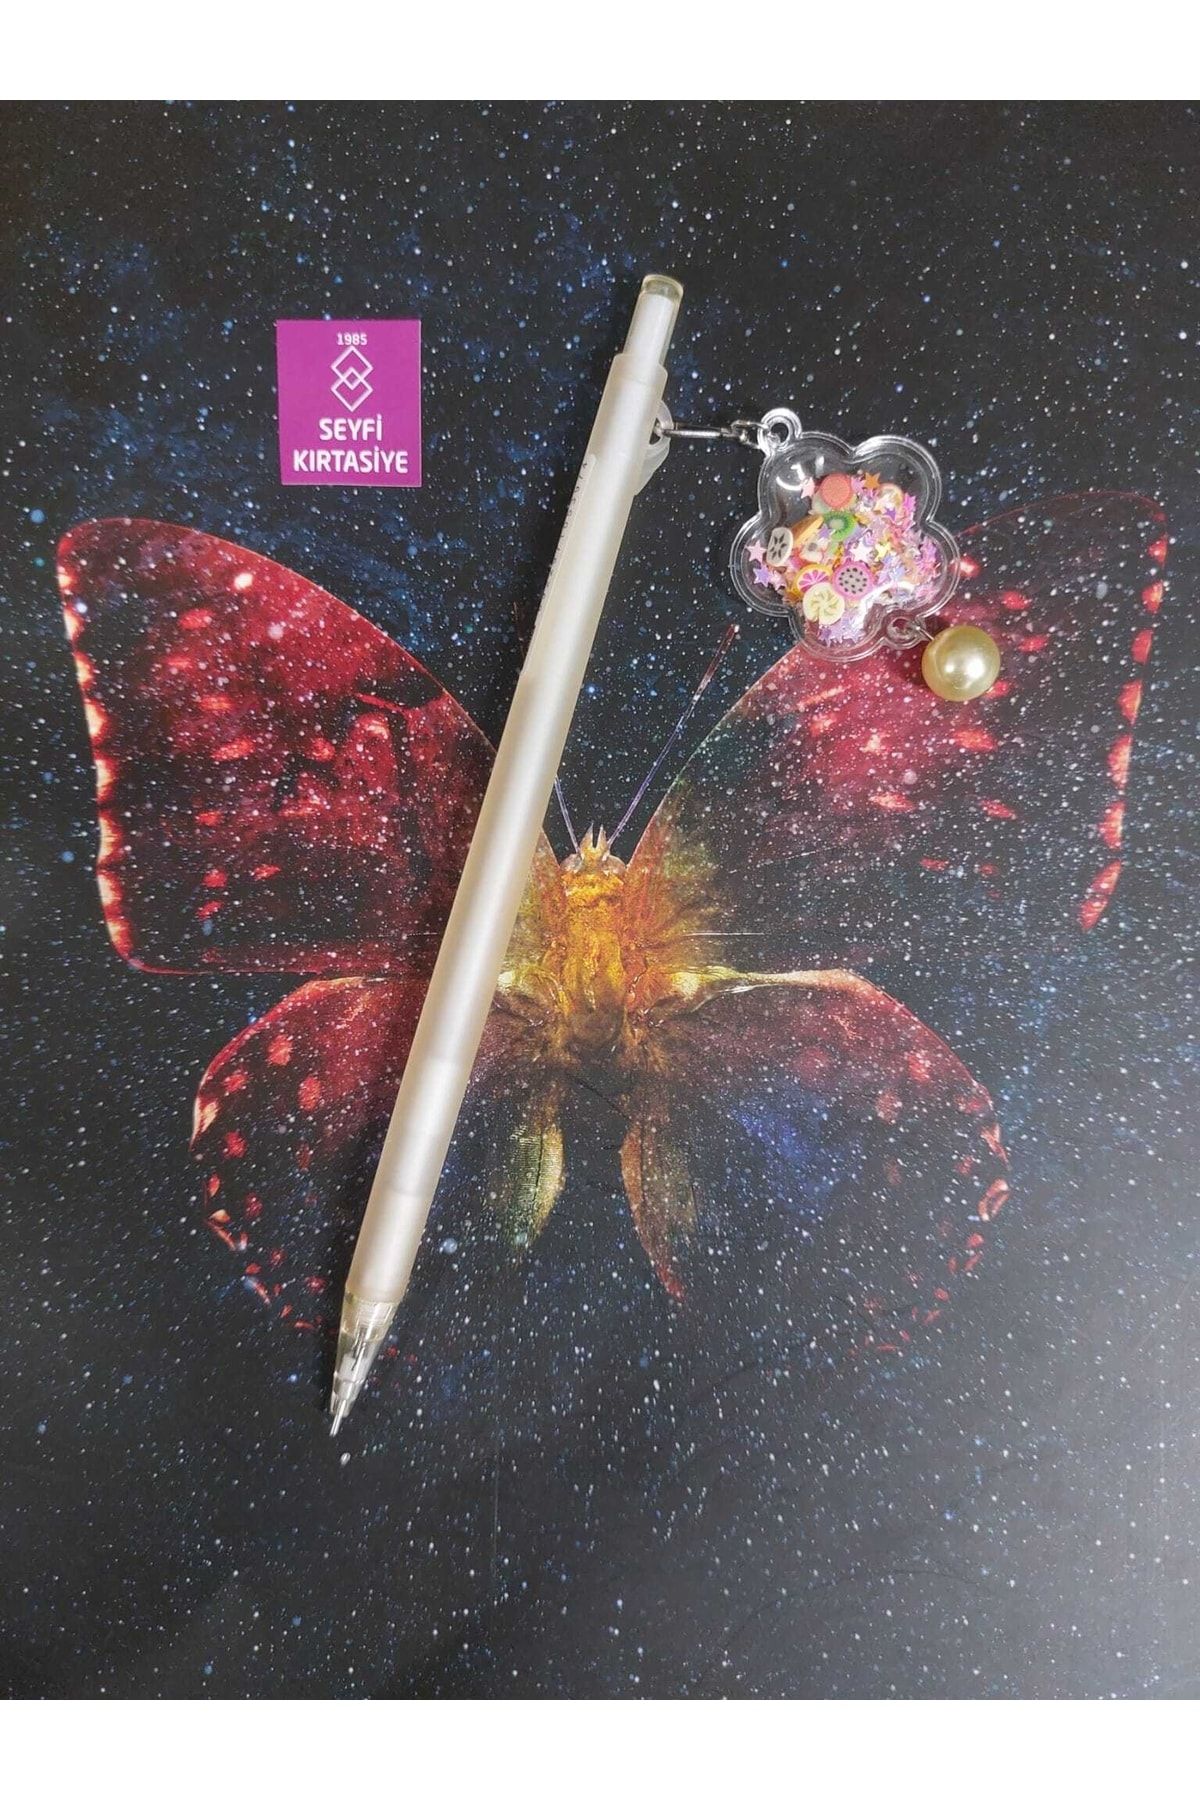 SEYFİKİRTASİYE Sevimli Eğlenceli 0.7 Uçlu Kalem Versatil Kalem